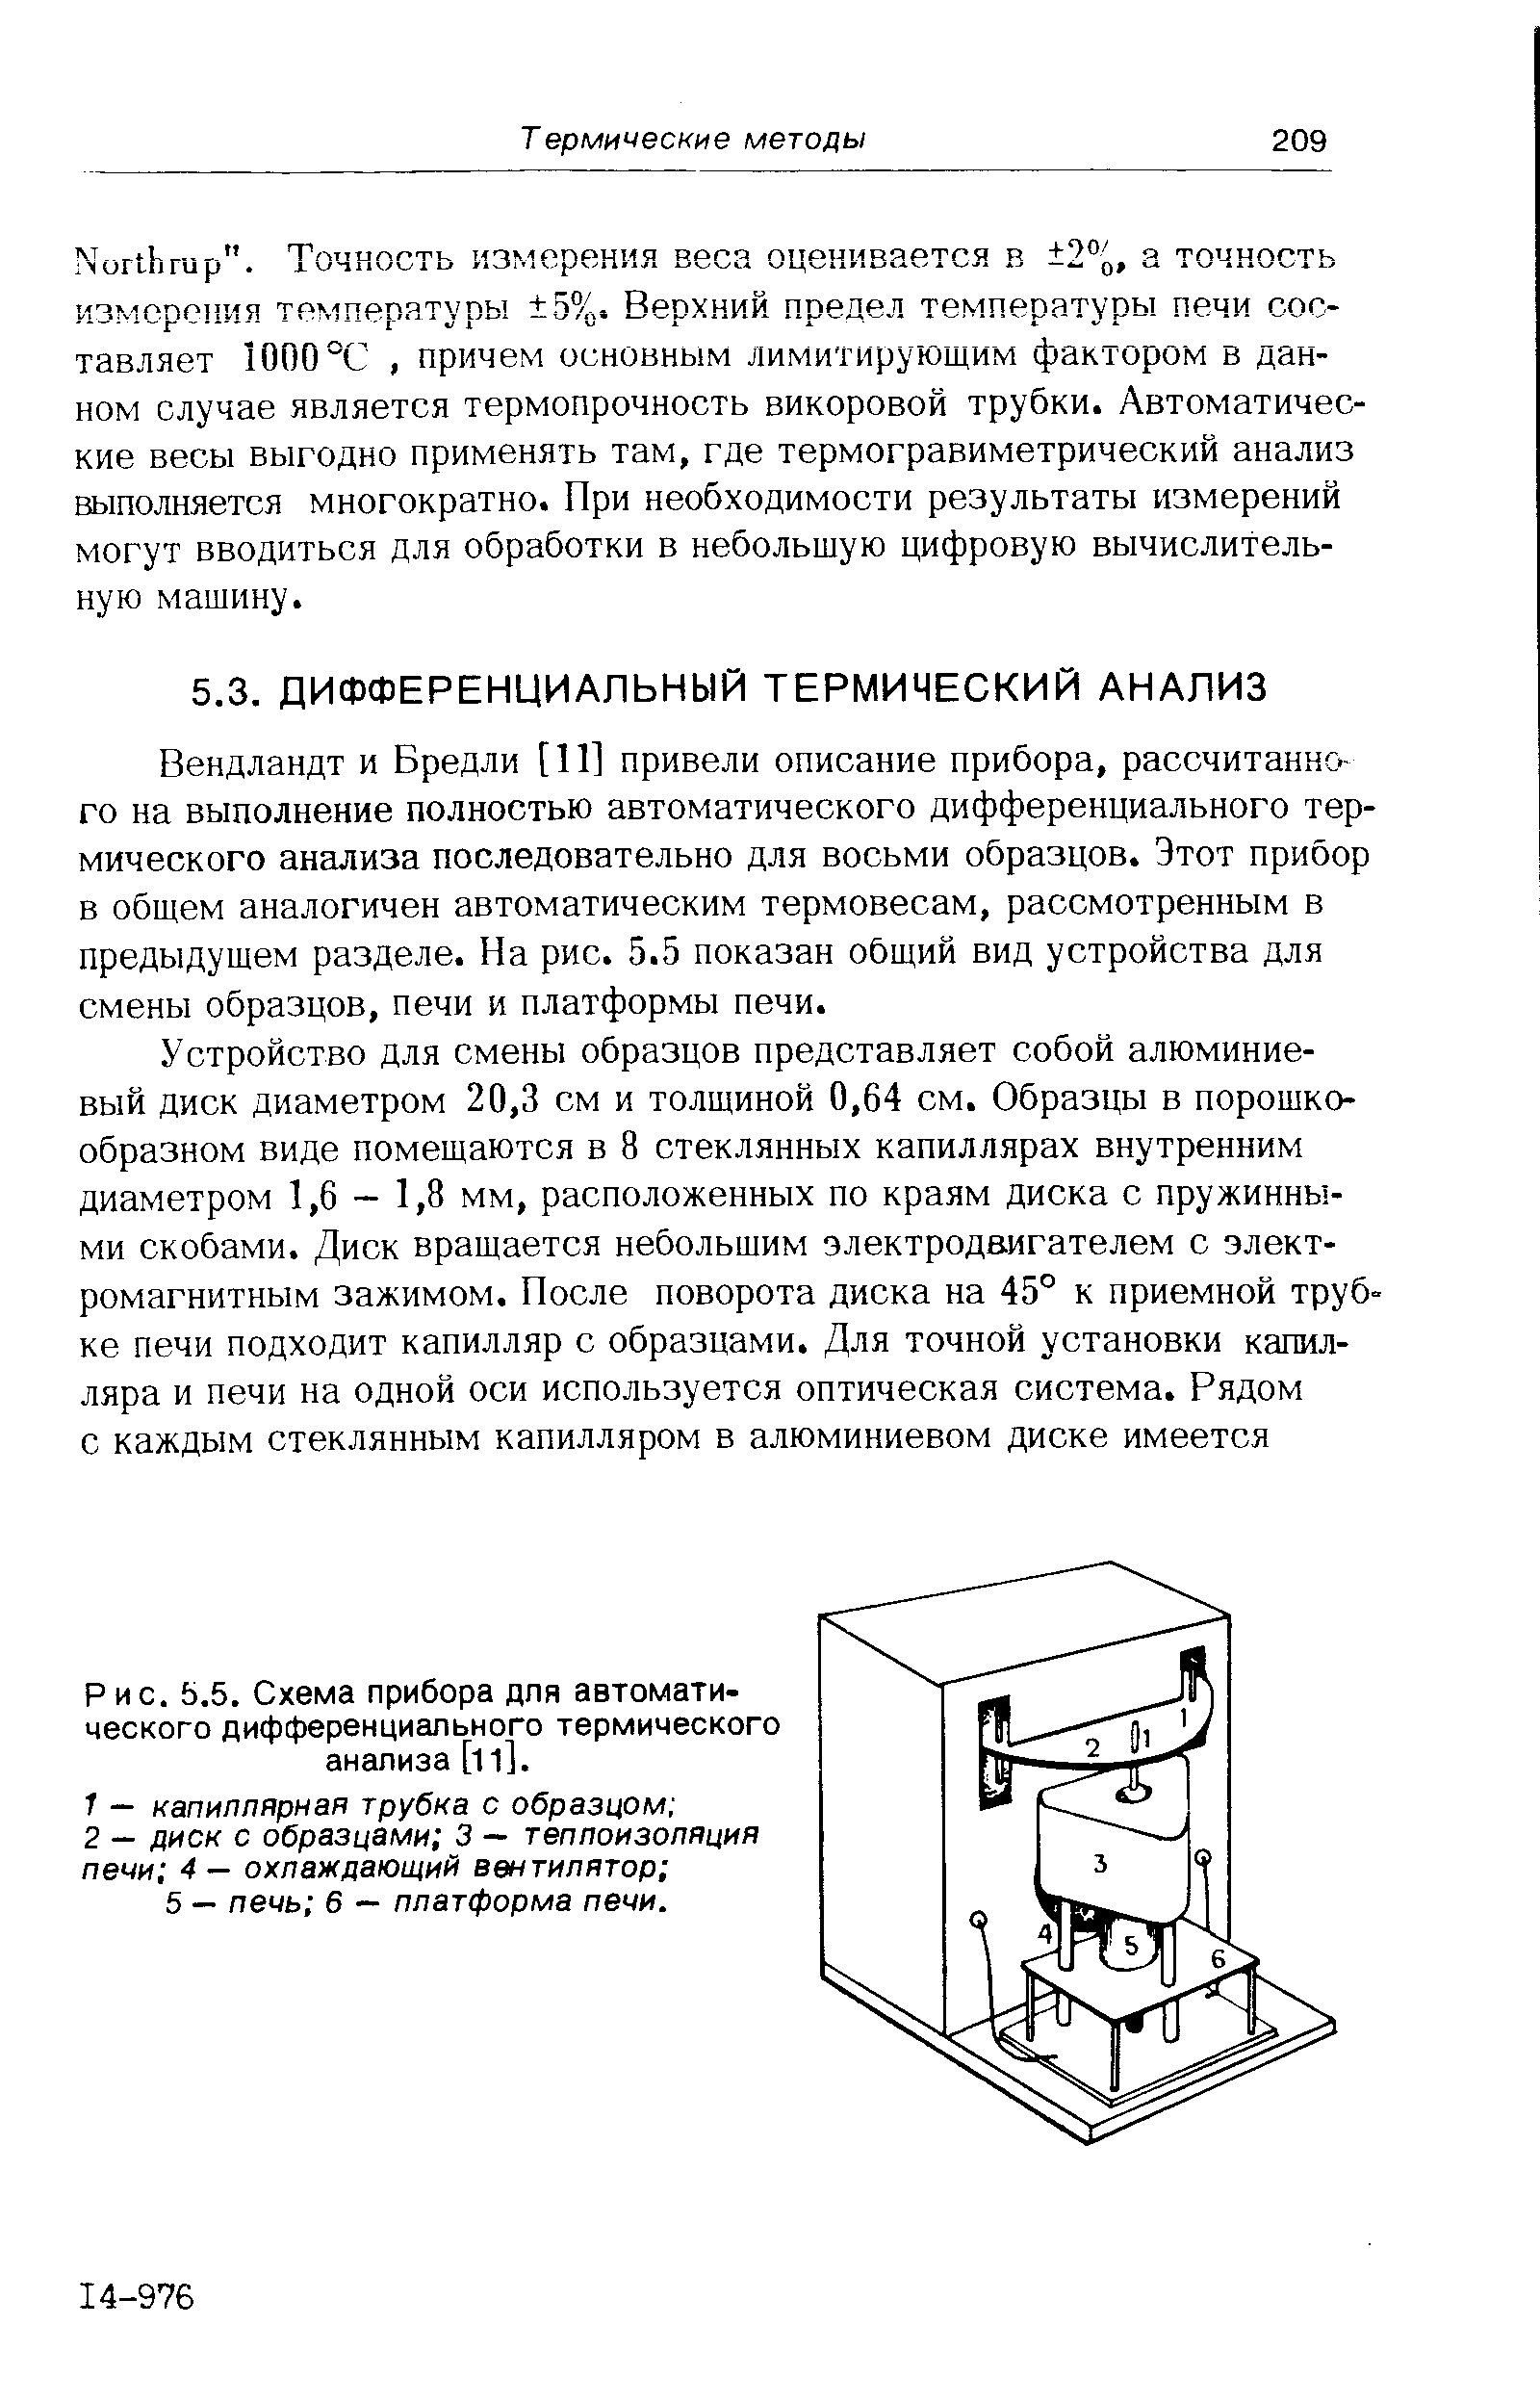 Рис. 5.5. Схема прибора для автоматического дифференциального термического анализа [11].